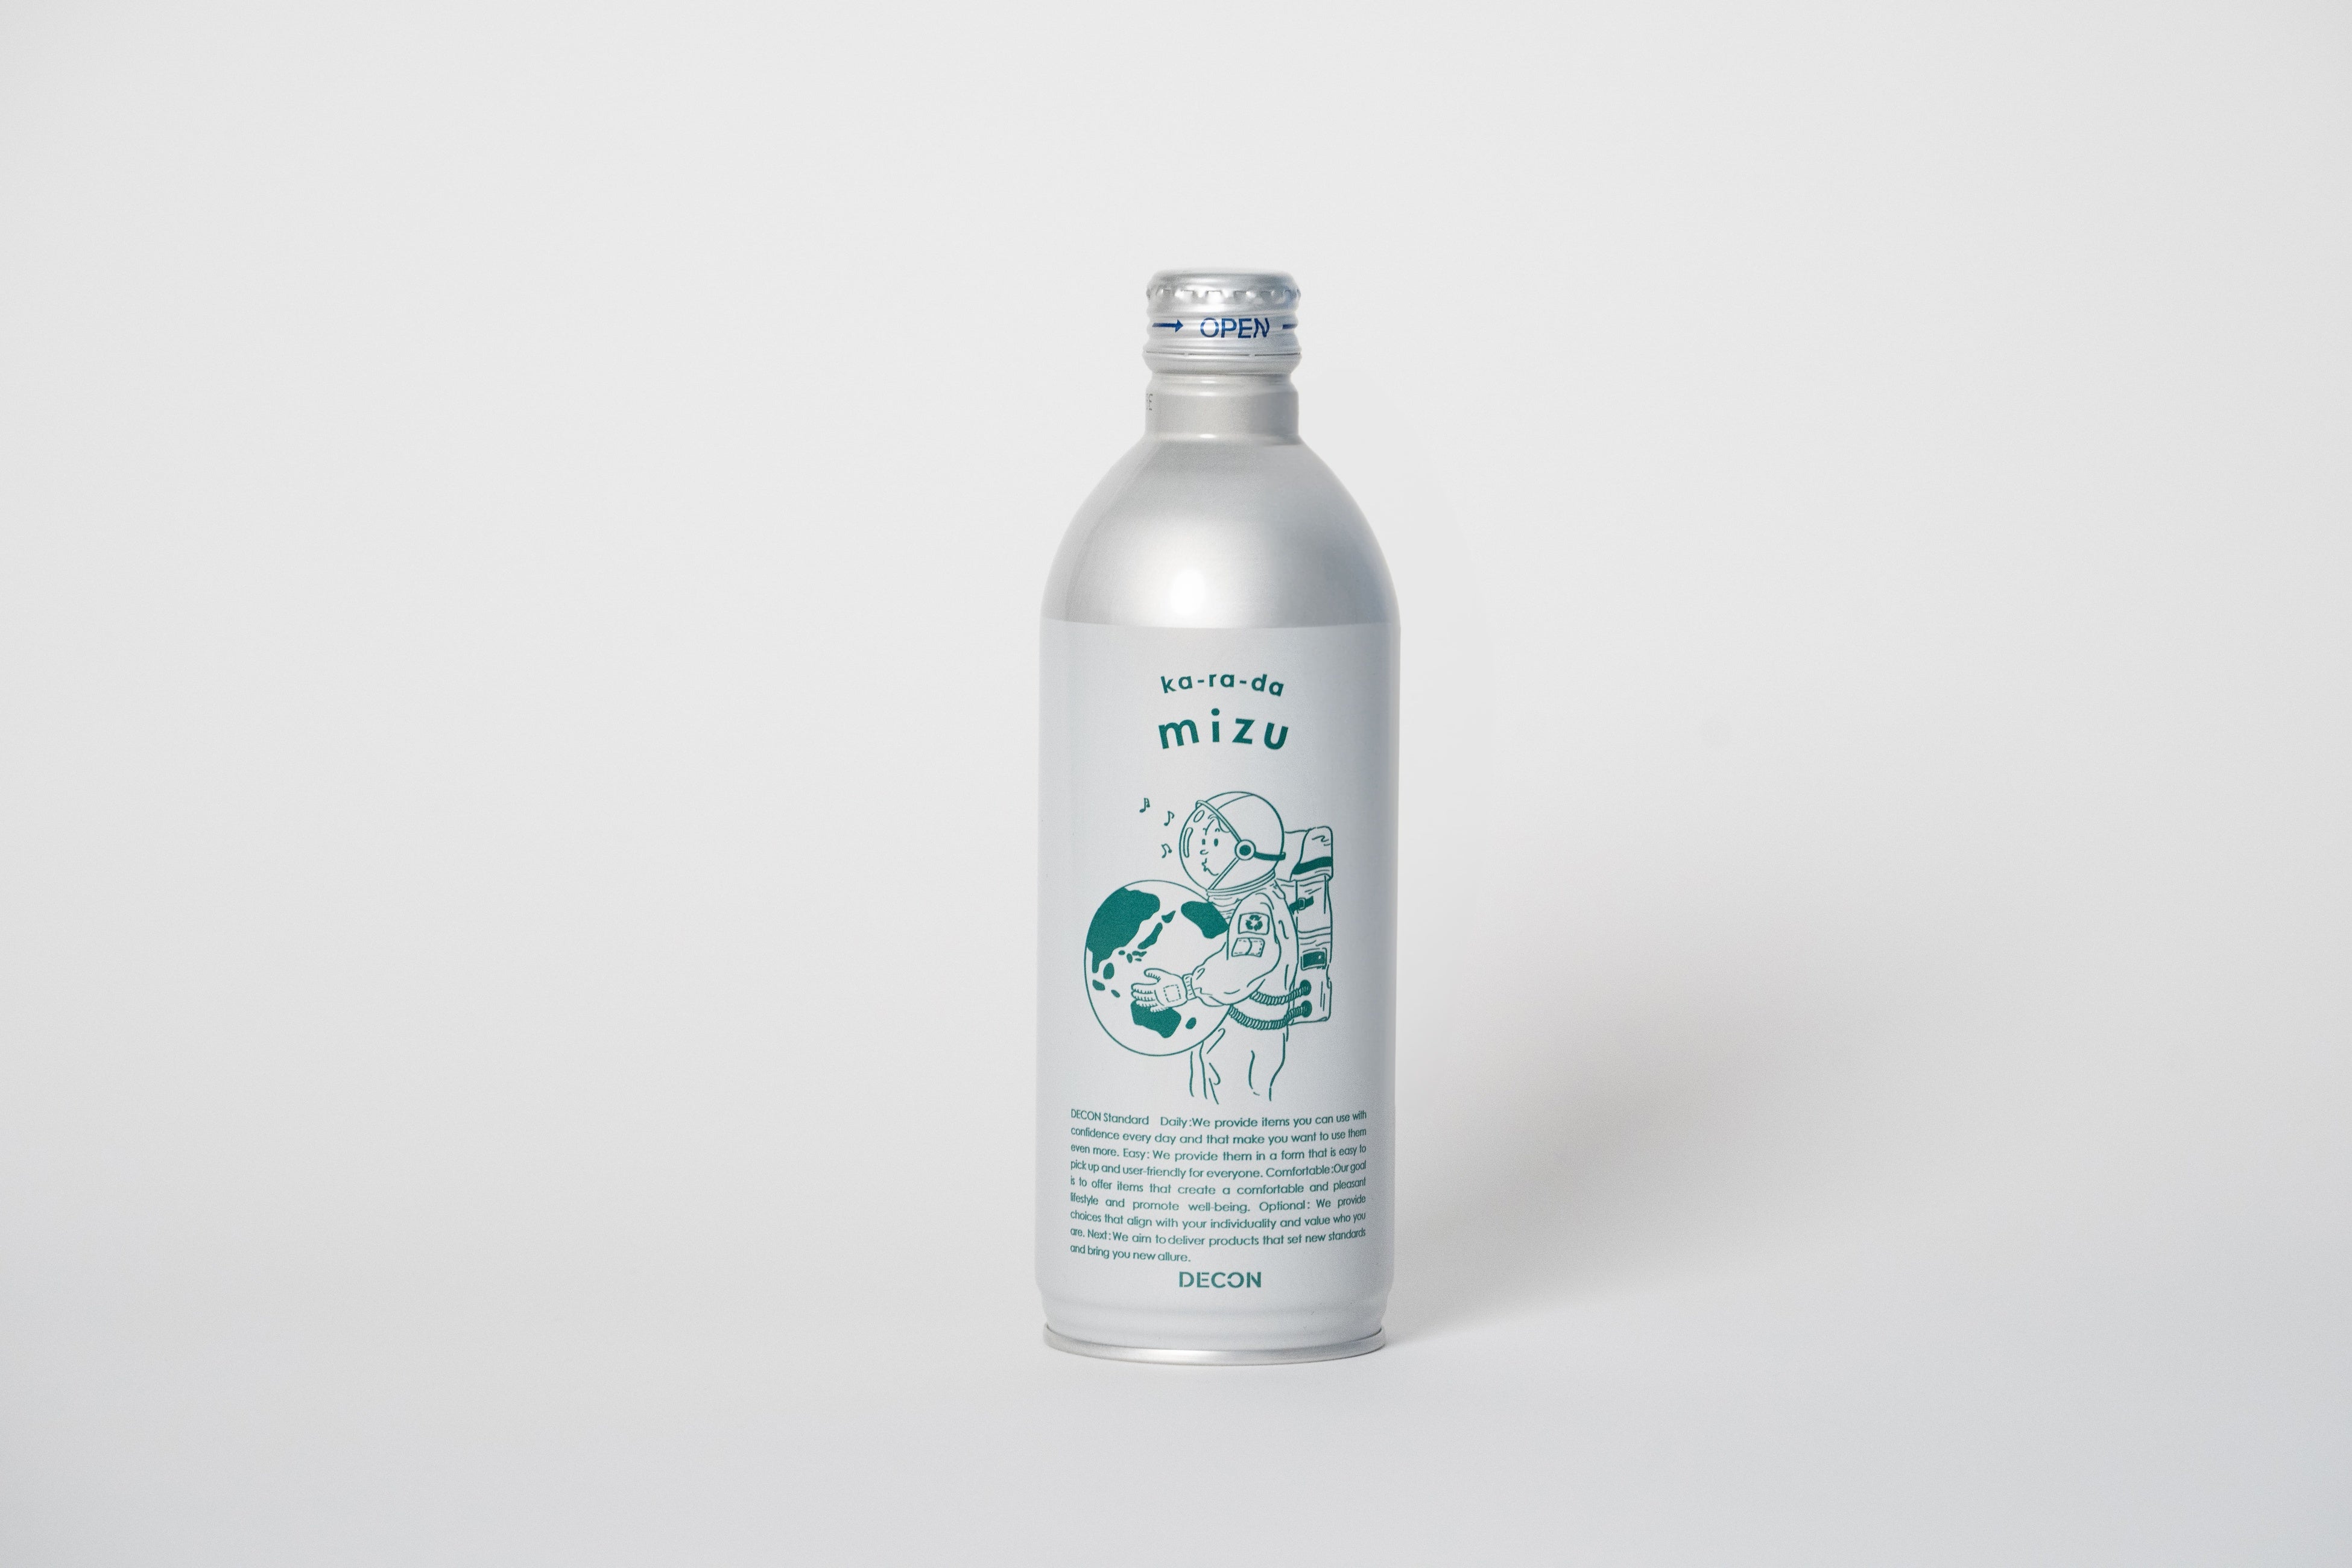 サーキュラーエコノミー(循環型経済)に寄与する、プラスチックフリーのアルミ缶ボトルを採用したミネラルウォーター「DECON ka-ra-da mizu」を11月23日(木)より販売開始いたします。